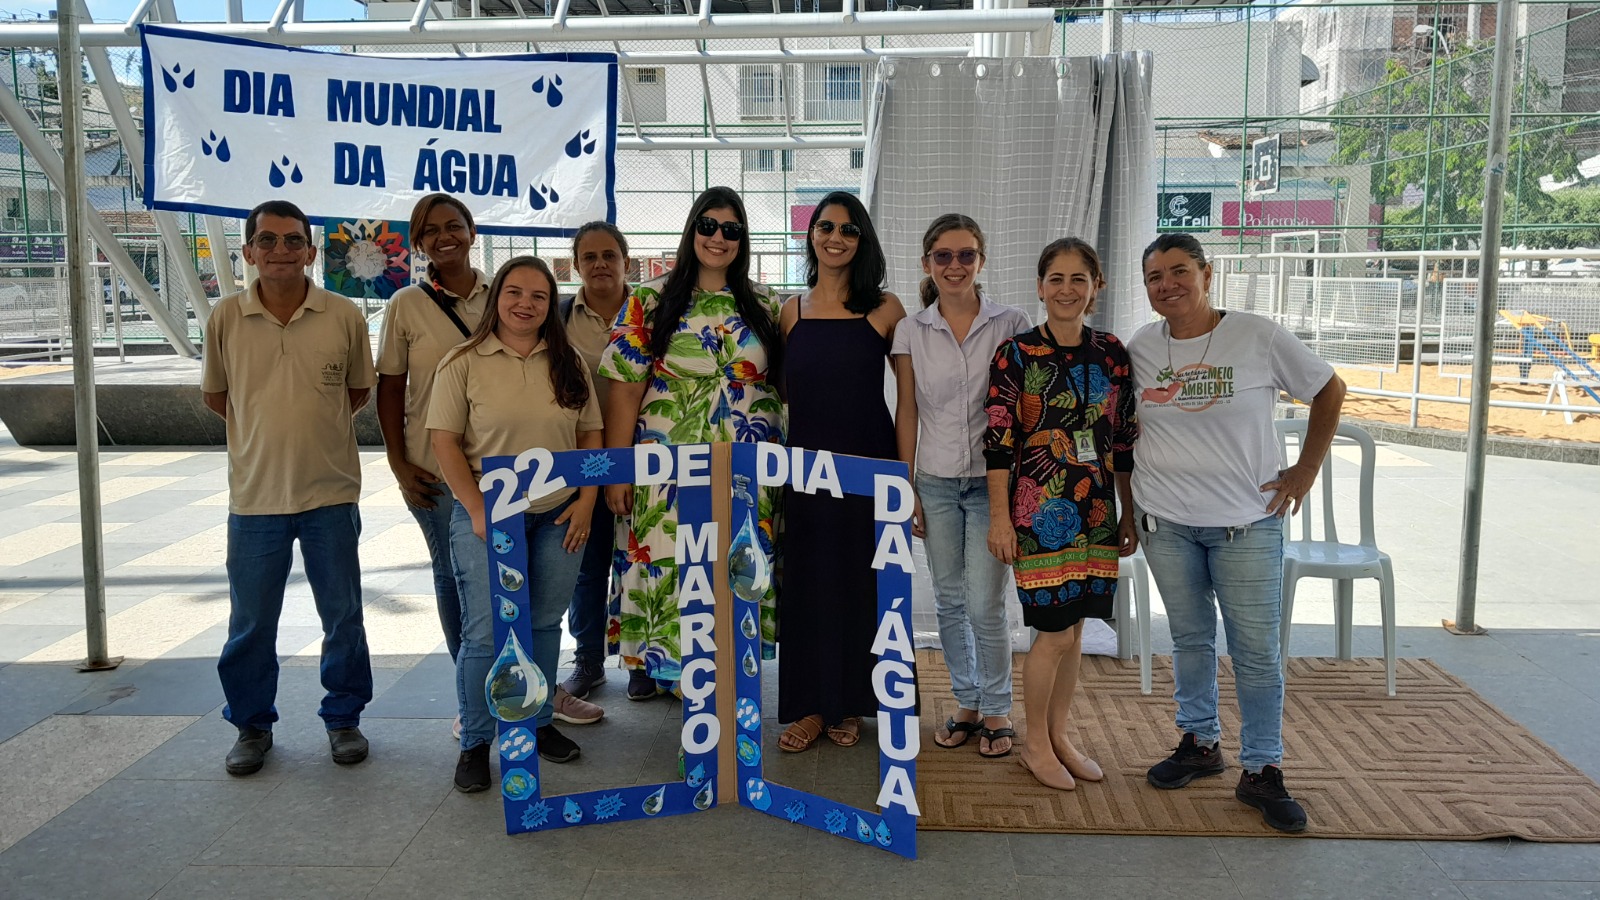 Galeria: Dia Mundial da Água - 22 de março - Praça Arlindo Pinto da Costa